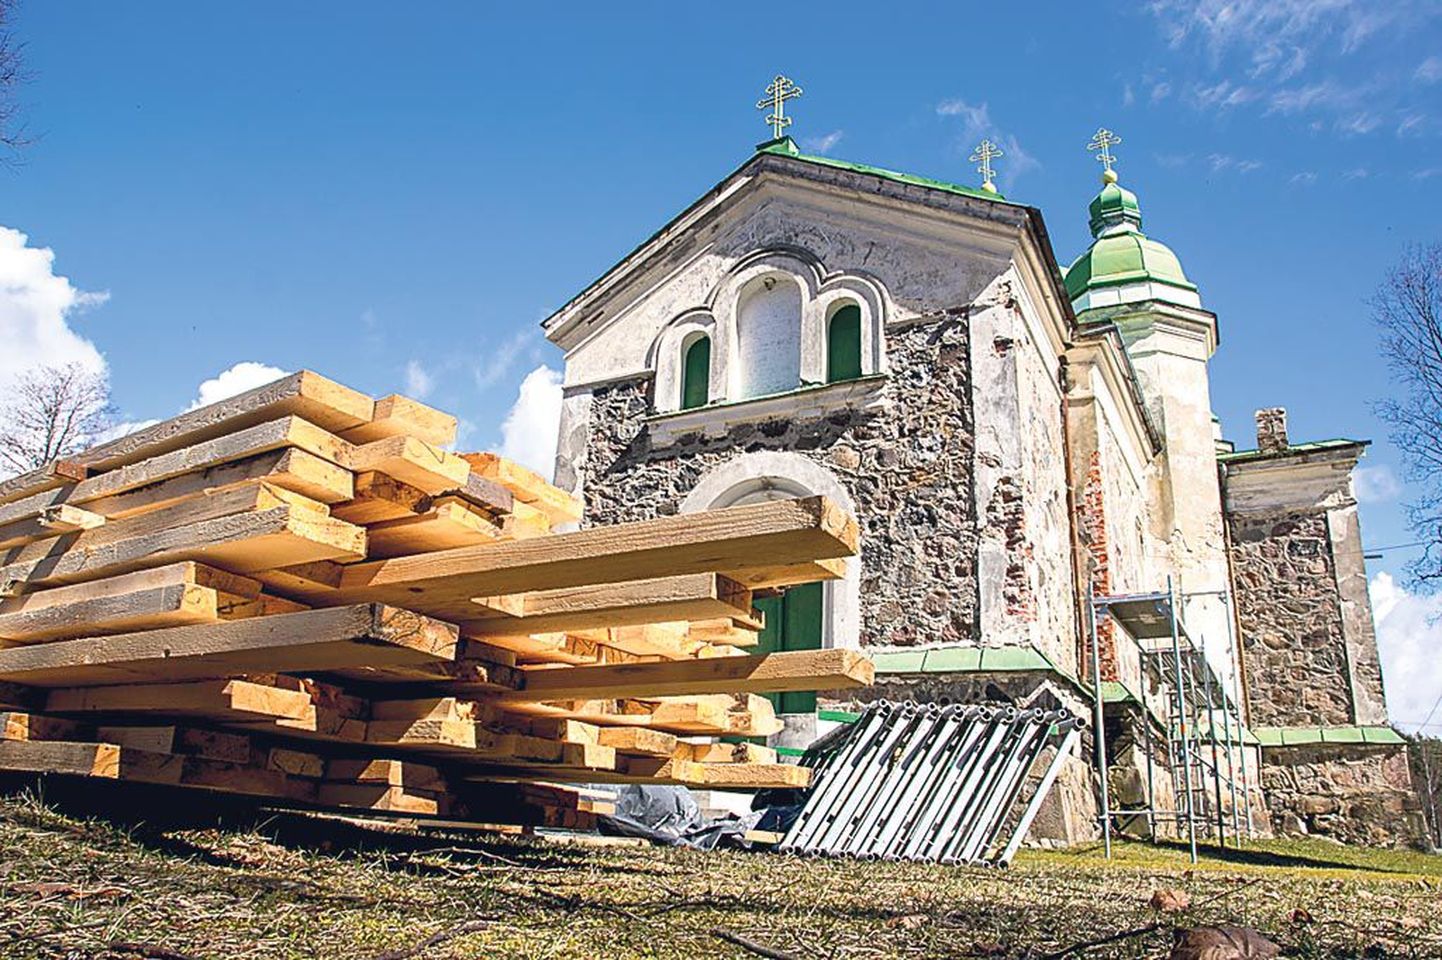 Renoveeritavas Pootsi-Kõpu kirikus on alates 19. sajandi keskpaigast tegutsenud katkematult väike kogudus, kirikus toimuvad kontserdidki.